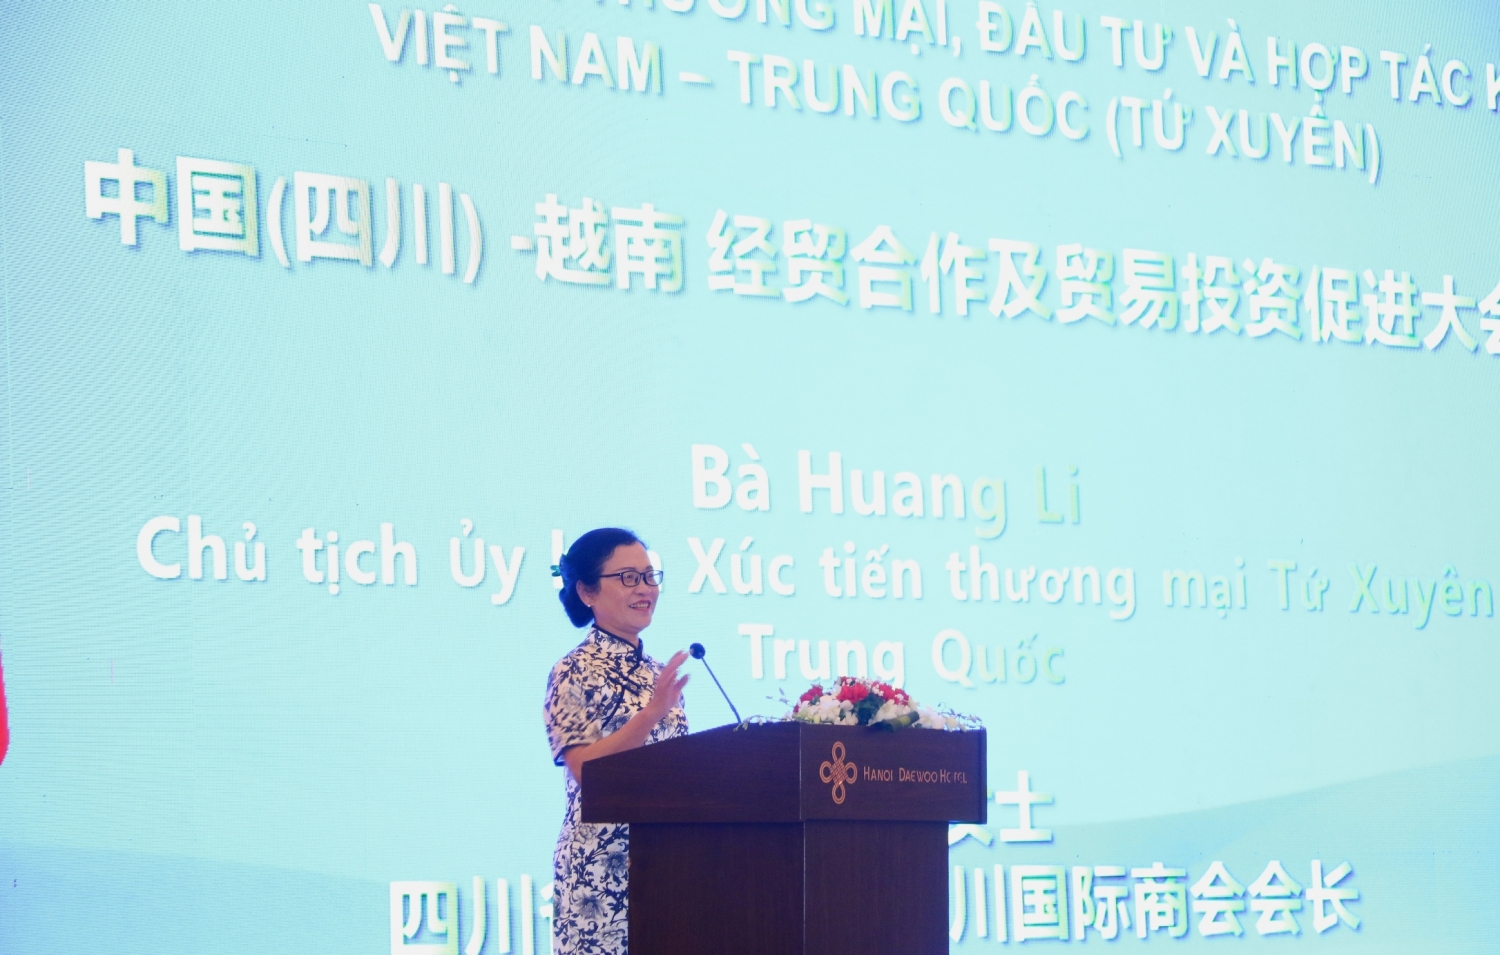 Doanh nghiệp Việt Nam - Tứ Xuyên (Trung Quốc) tìm cơ hội mở rộng hợp tác, giao thương